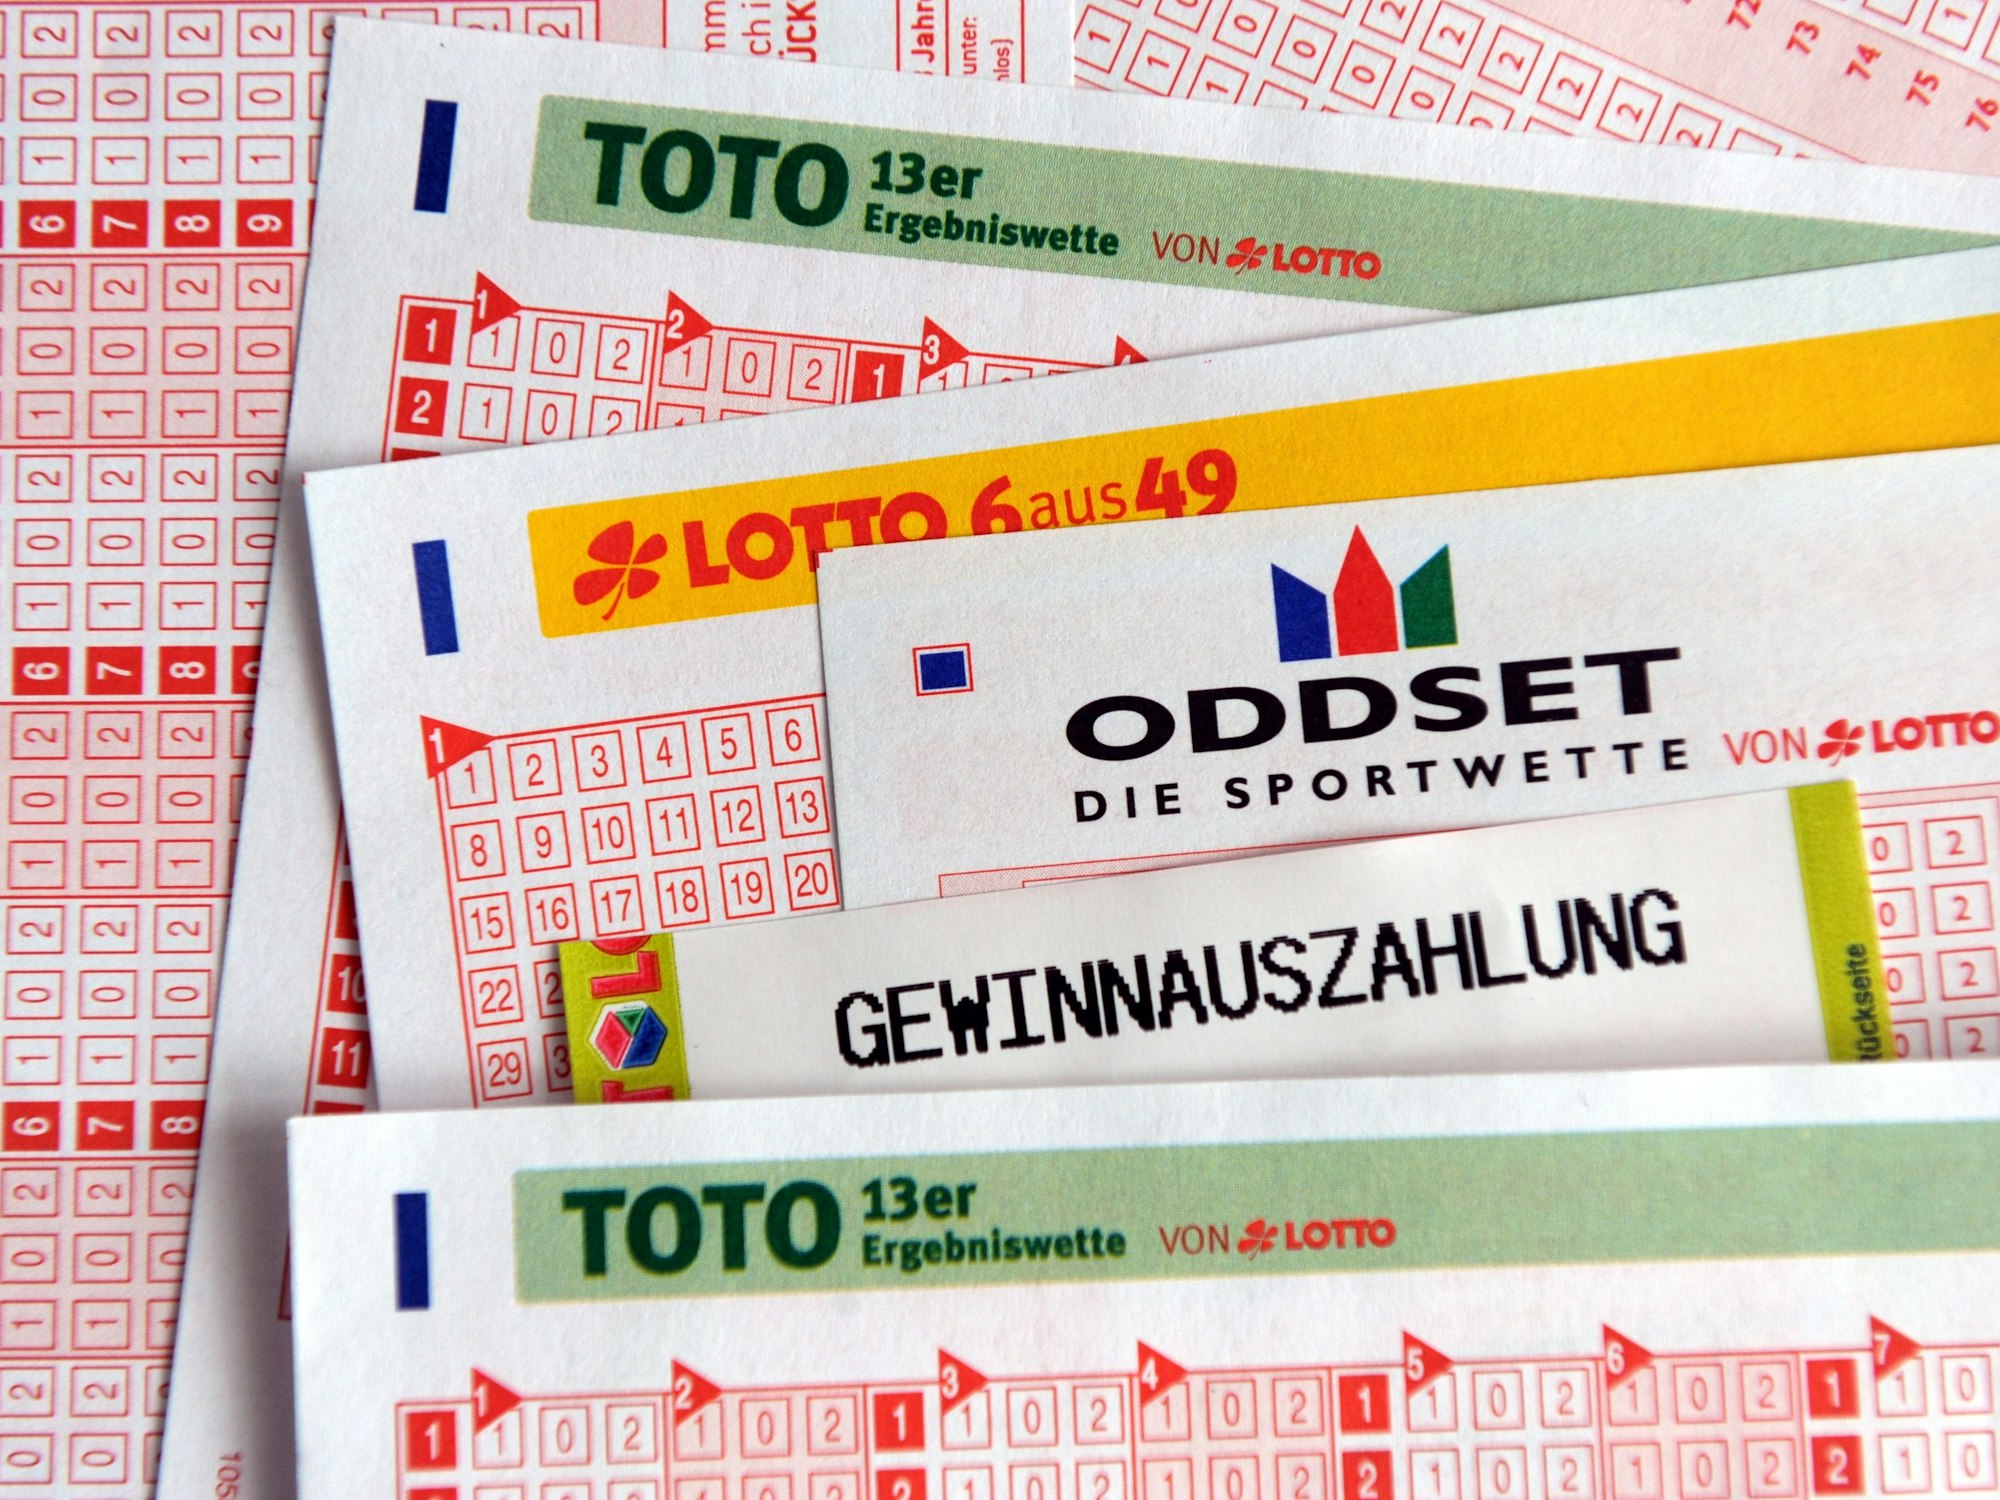 Spielscheine liegen in Düsseldorf aus, hier im September 2010. (Symbolfoto)